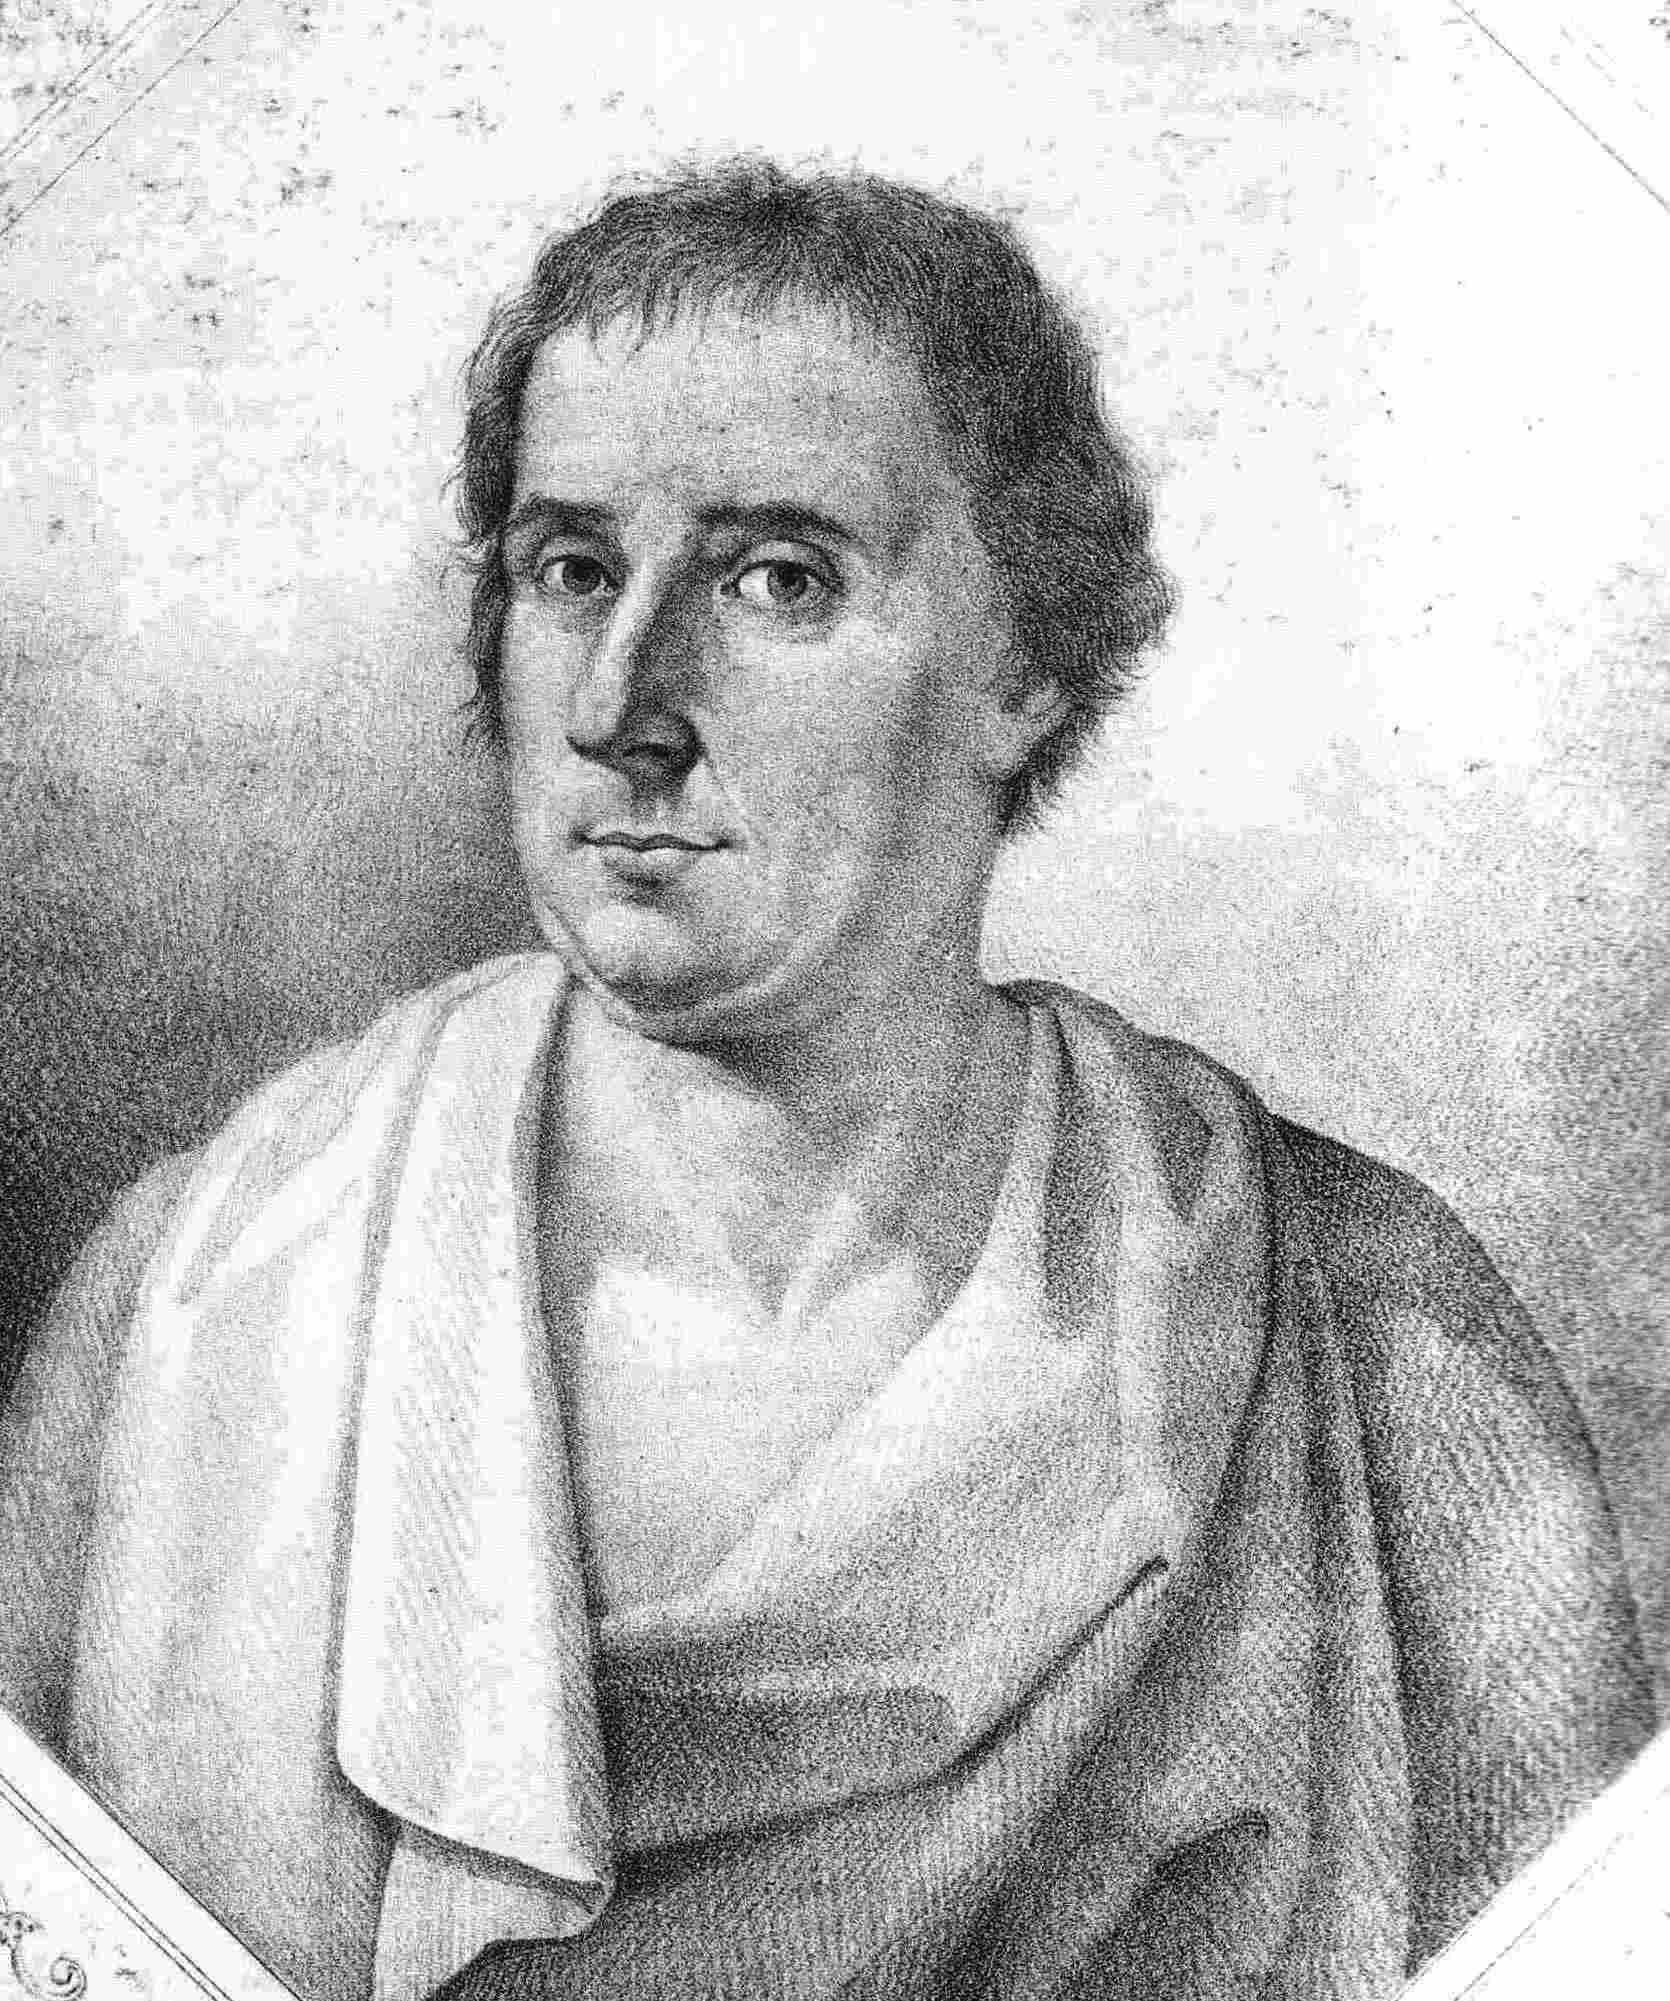 Portrait by Tiziano Marcheselli, {{circa|1790}}